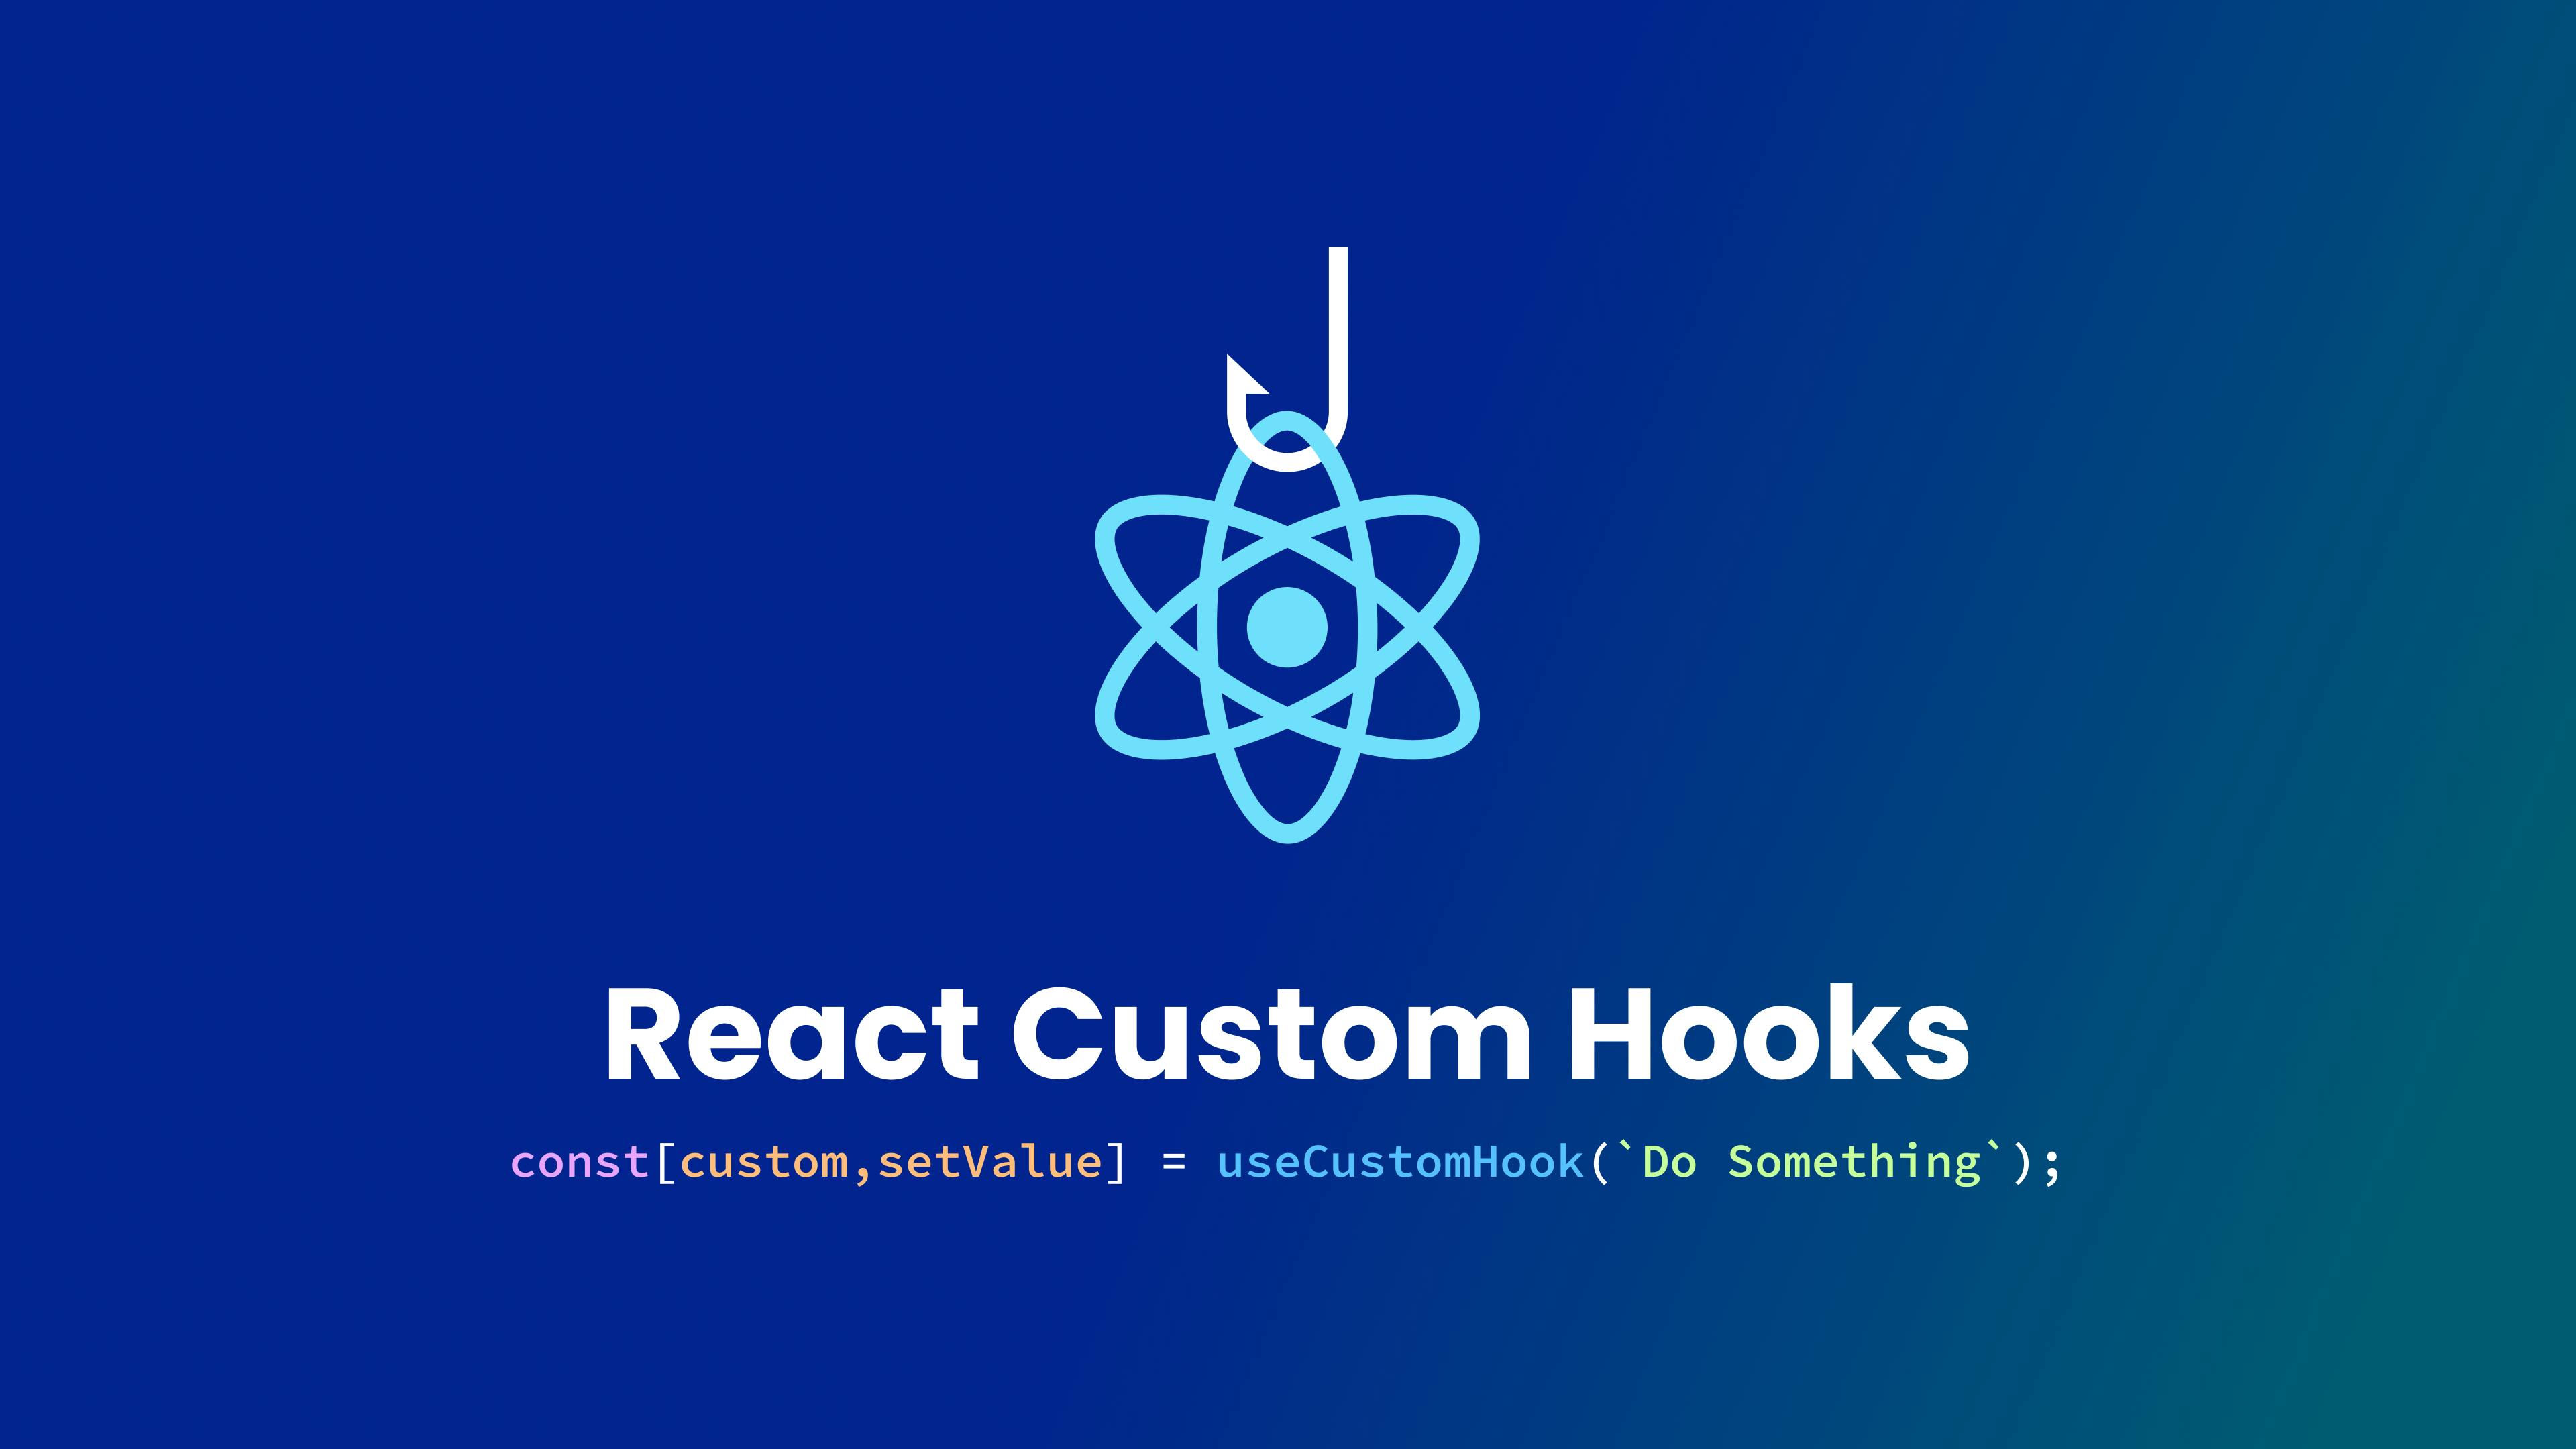 Cover image of the custom hooks blog